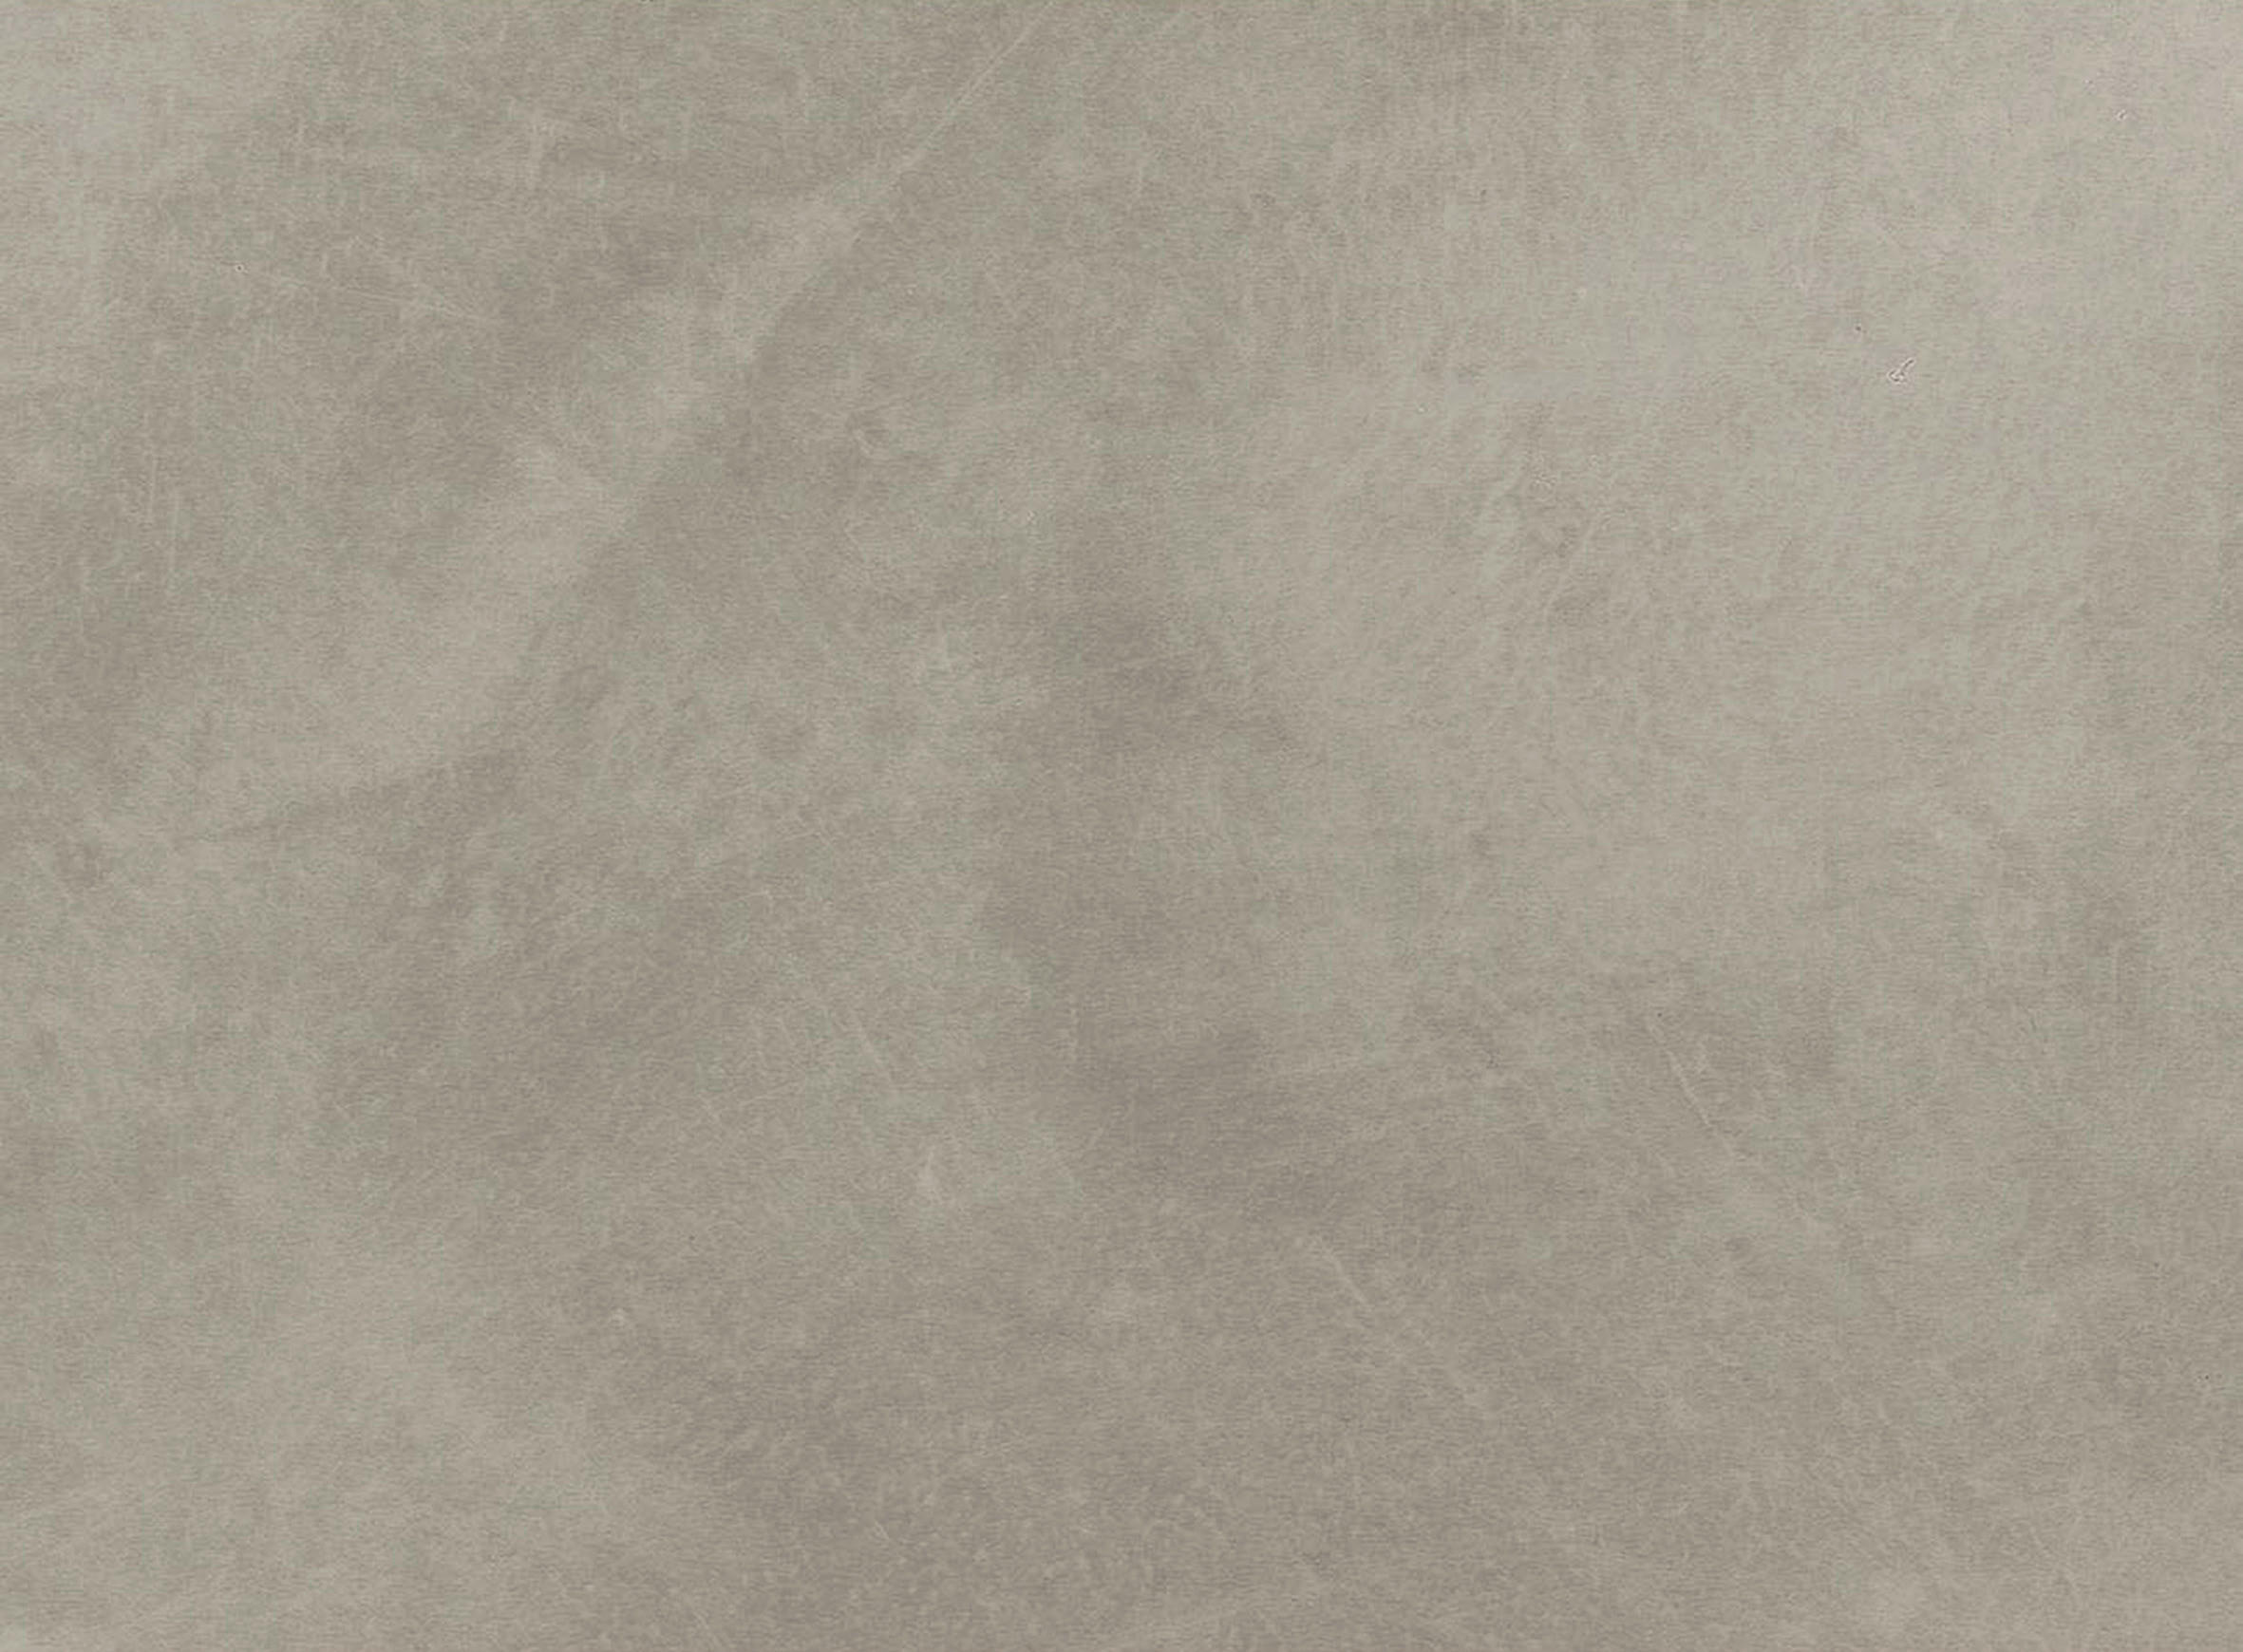 VINYLBODEN  Grau, Hellgrau   - Hellgrau/Grau, Design (63,1/31,3/0,65cm) - Living by HARO